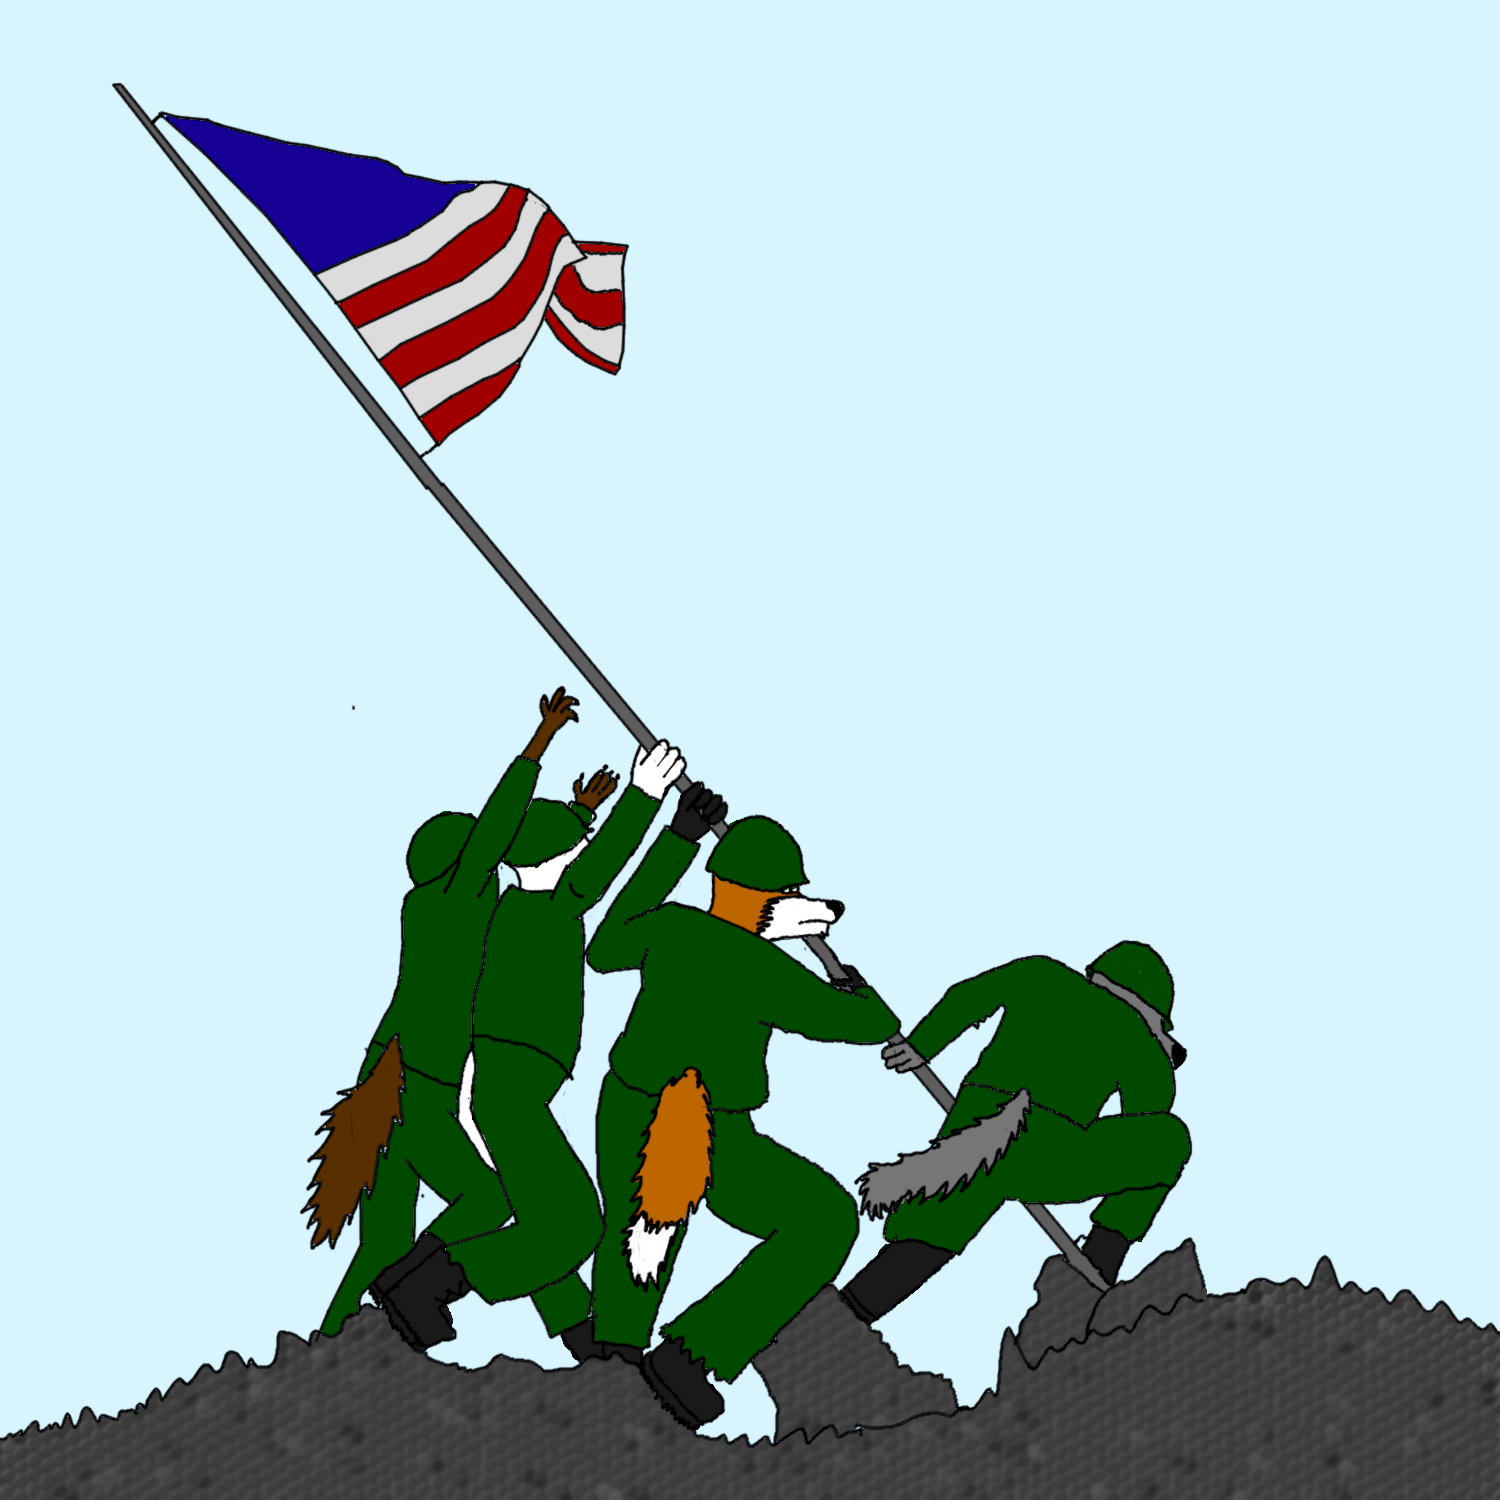 Raising The Flag Over Iwo Jima by trainguy101 on DeviantArt